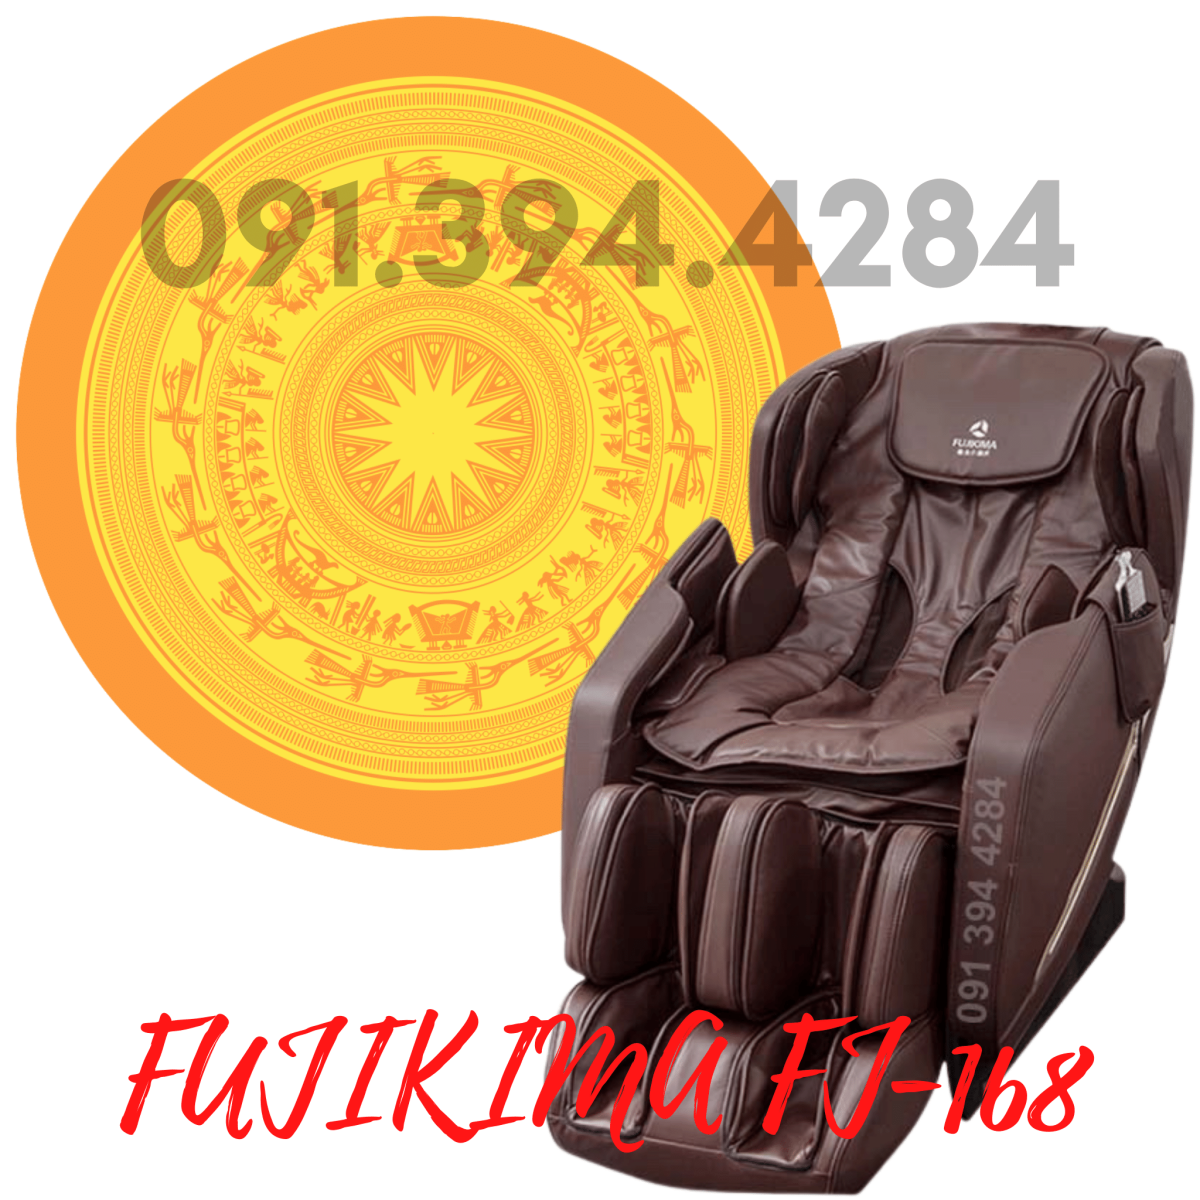 Fujikima FJ 168 giá rẻ nhất - gọi ngay 091.394.4284